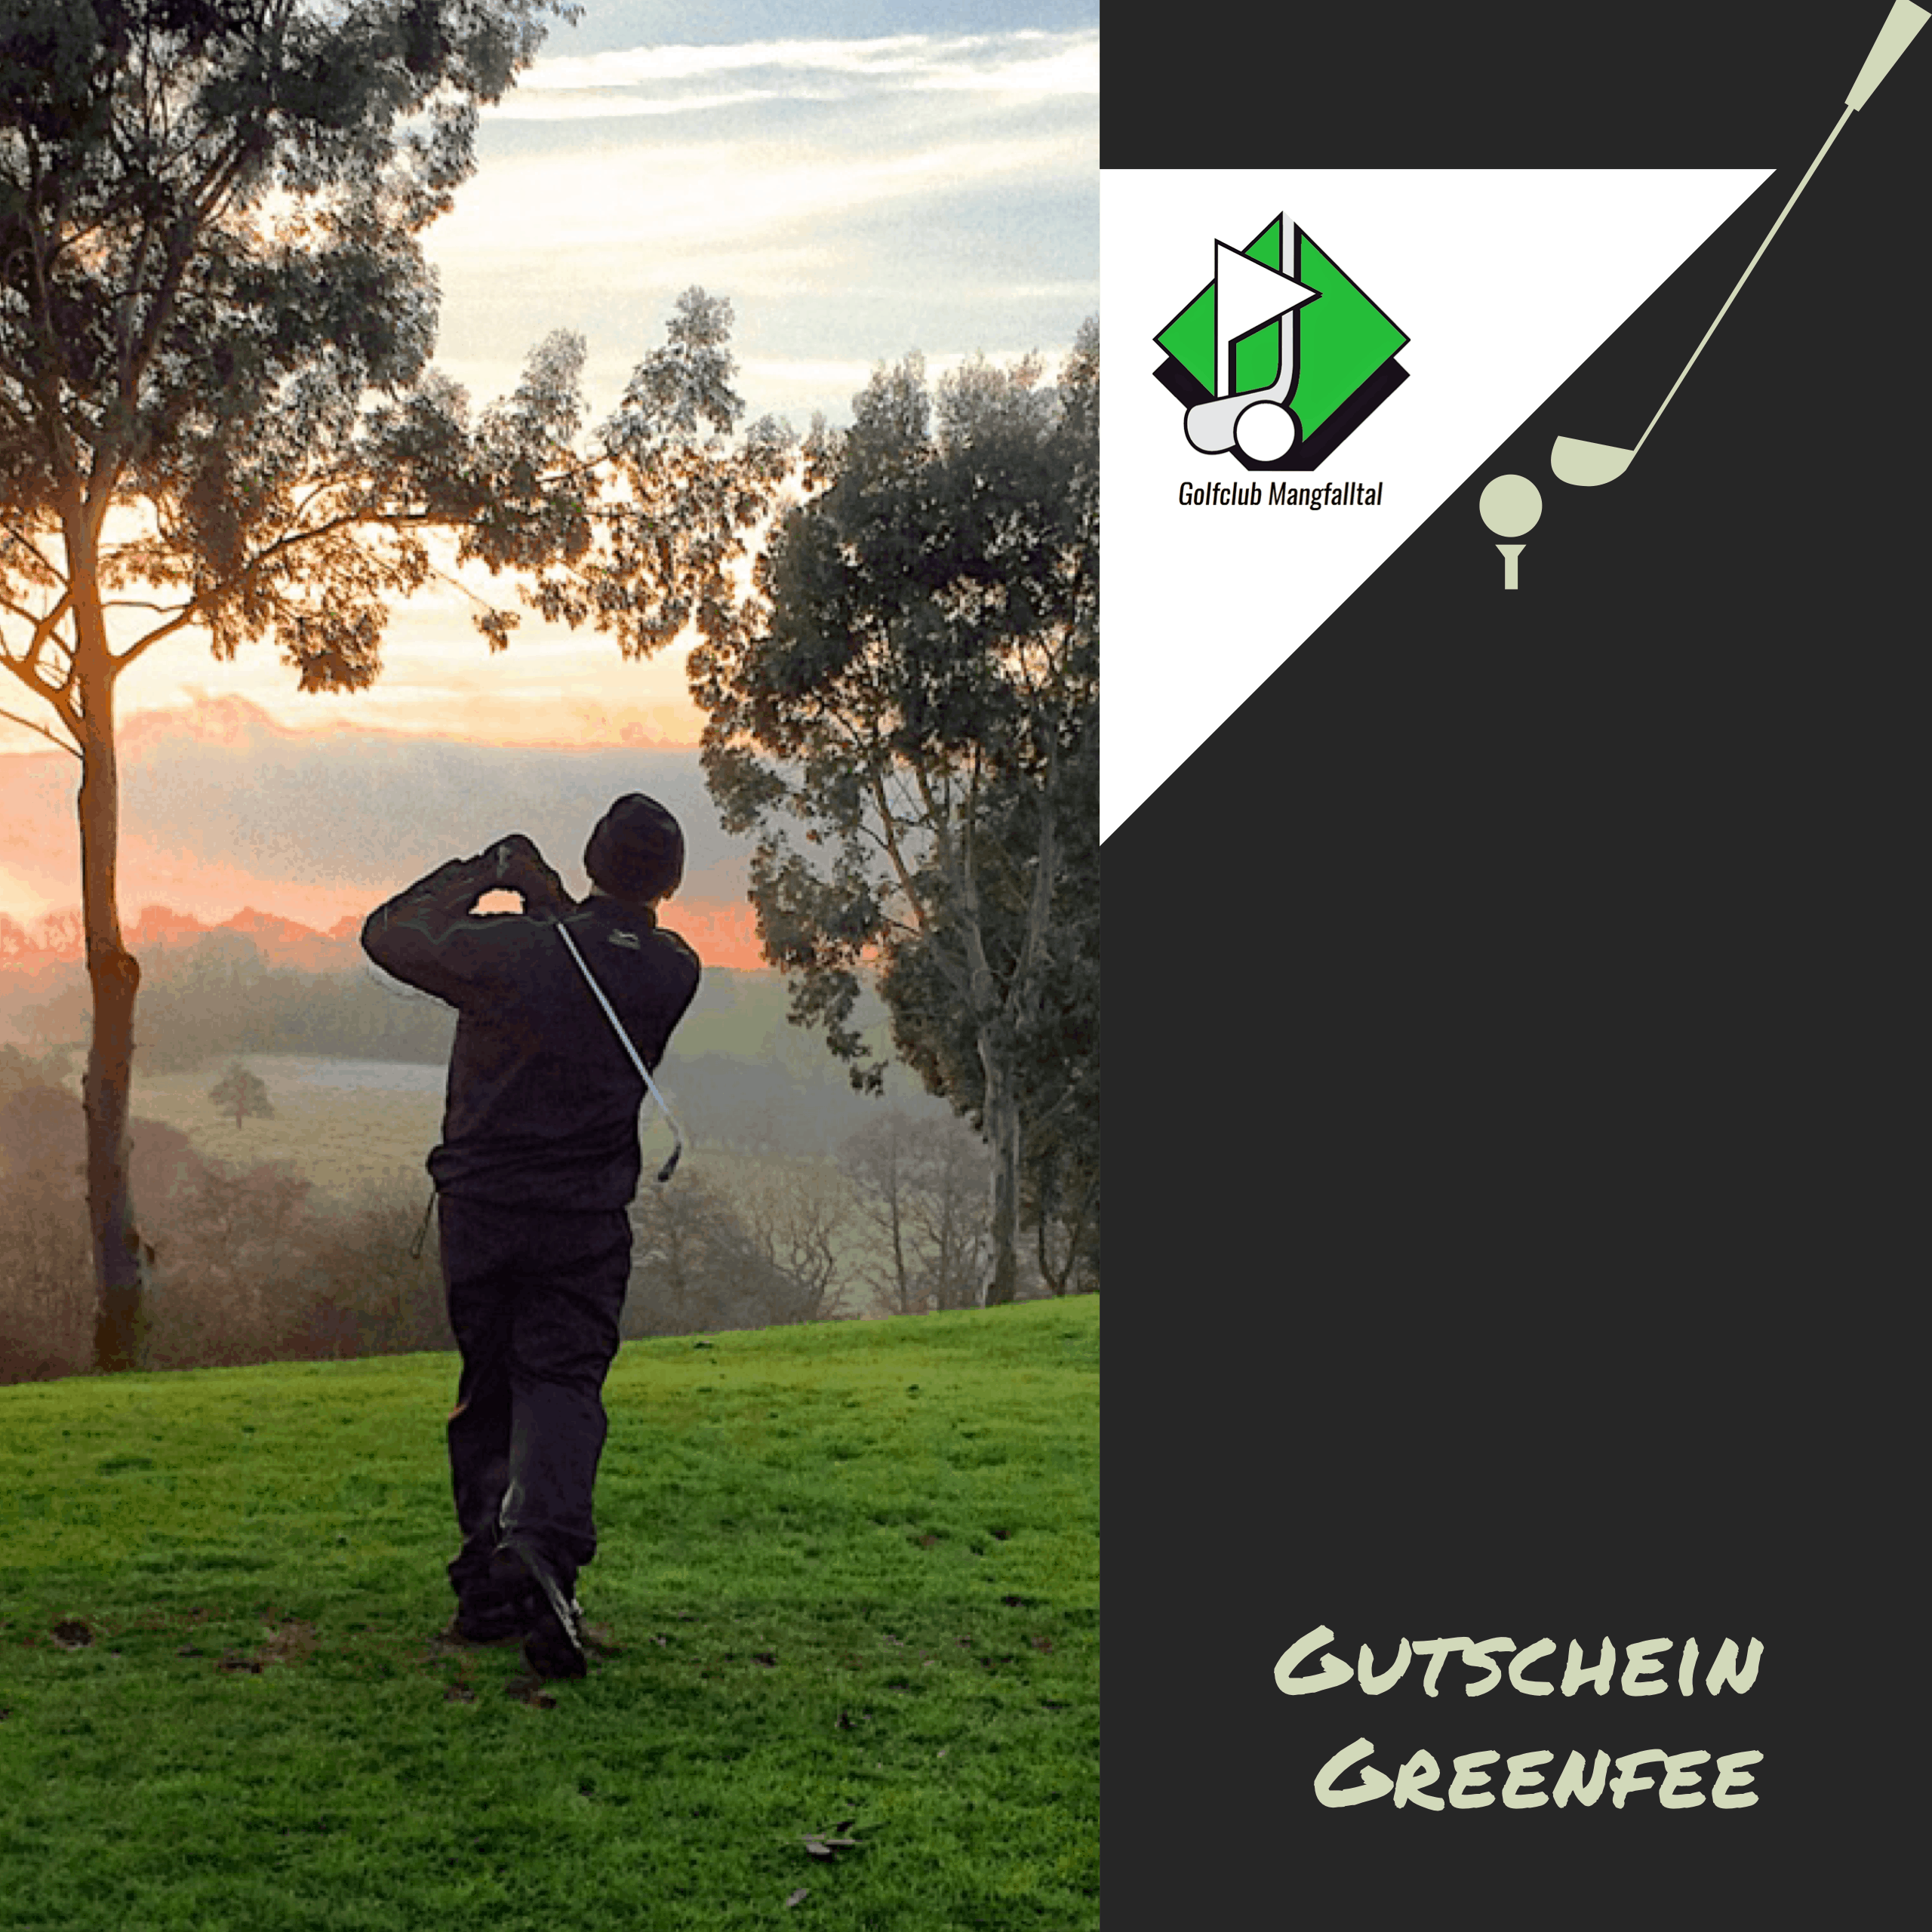 Golfanlage Mangfalltal – Gutschein Greenfee – Early Morning oder Afterwork – LOKAGO